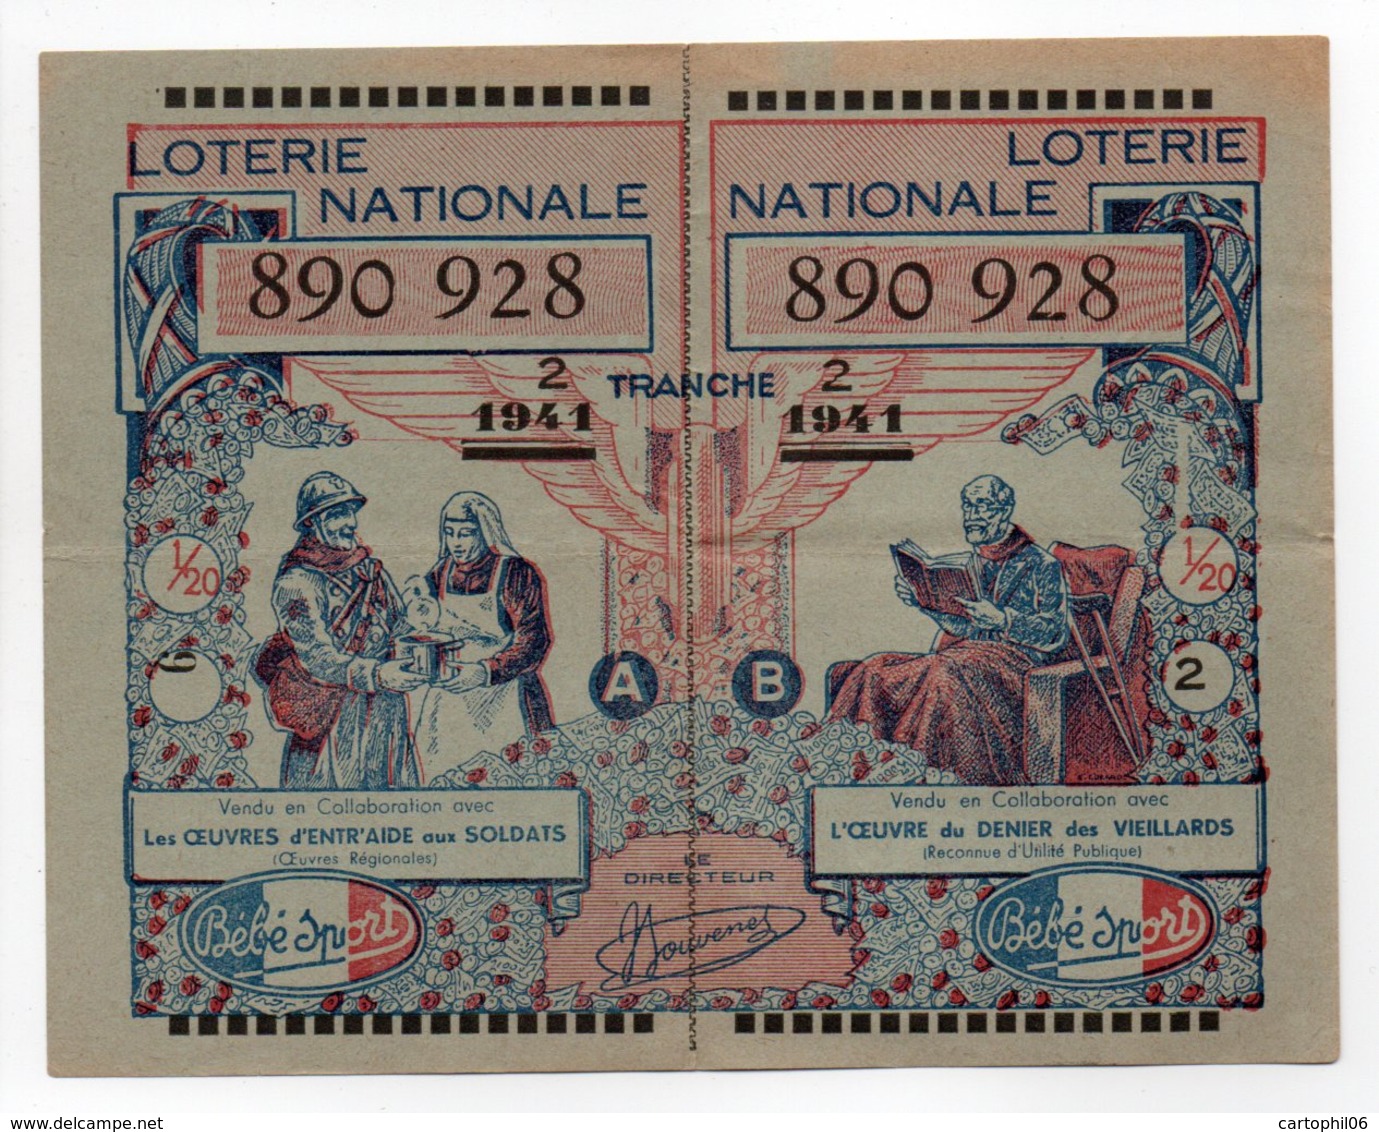 - BILLET DE LOTERIE NATIONALE 1941 - 2e TRANCHE - Etablissements BÉBÉ-SPORT - - Billets De Loterie